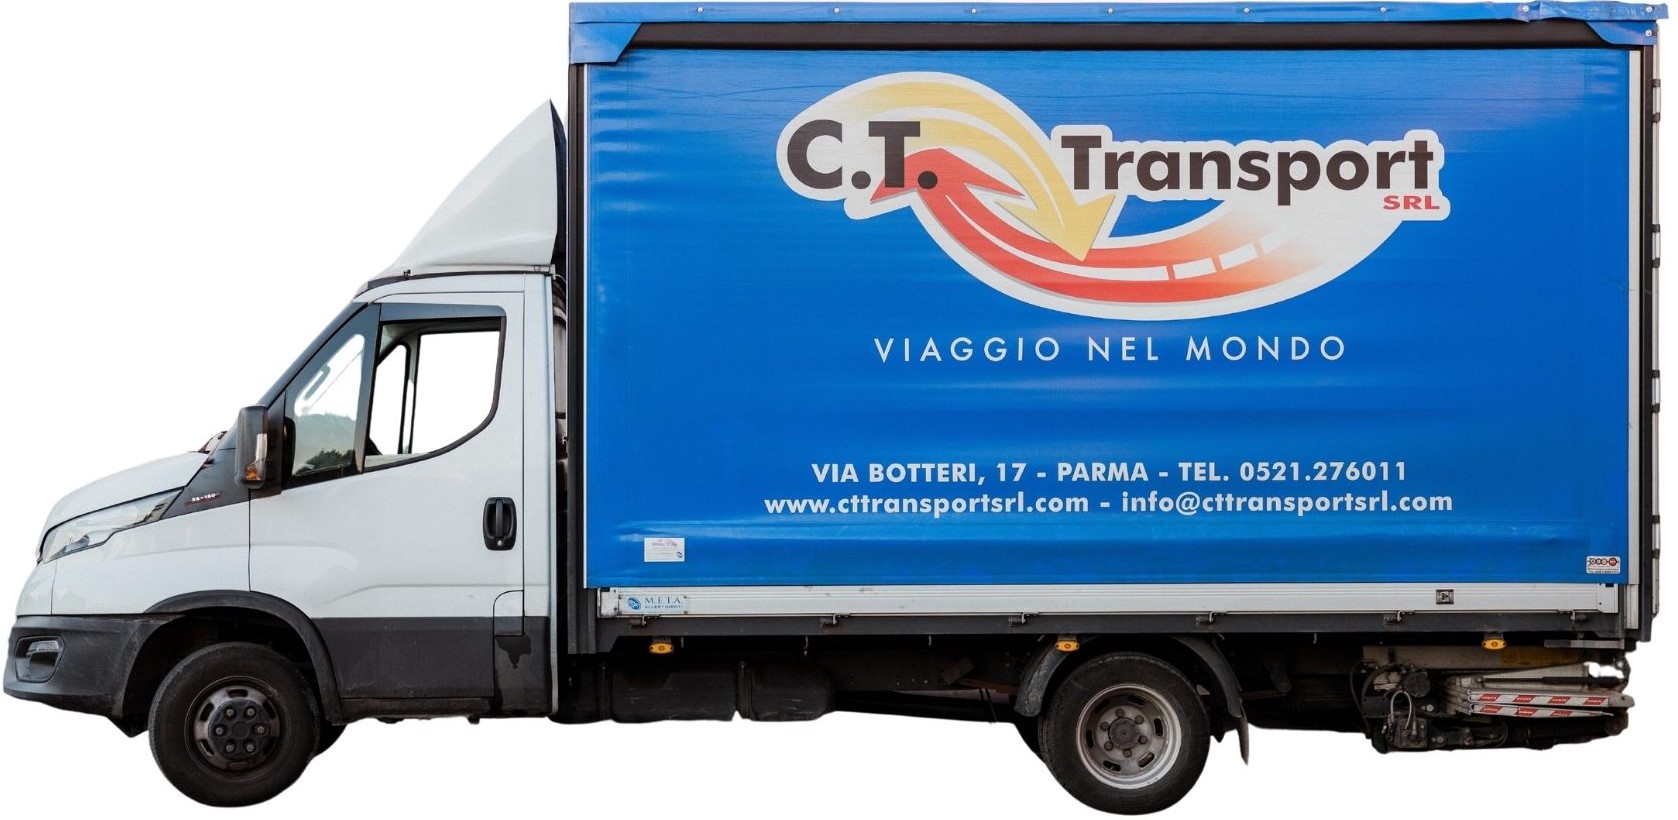 ct-transport-bilico-parma